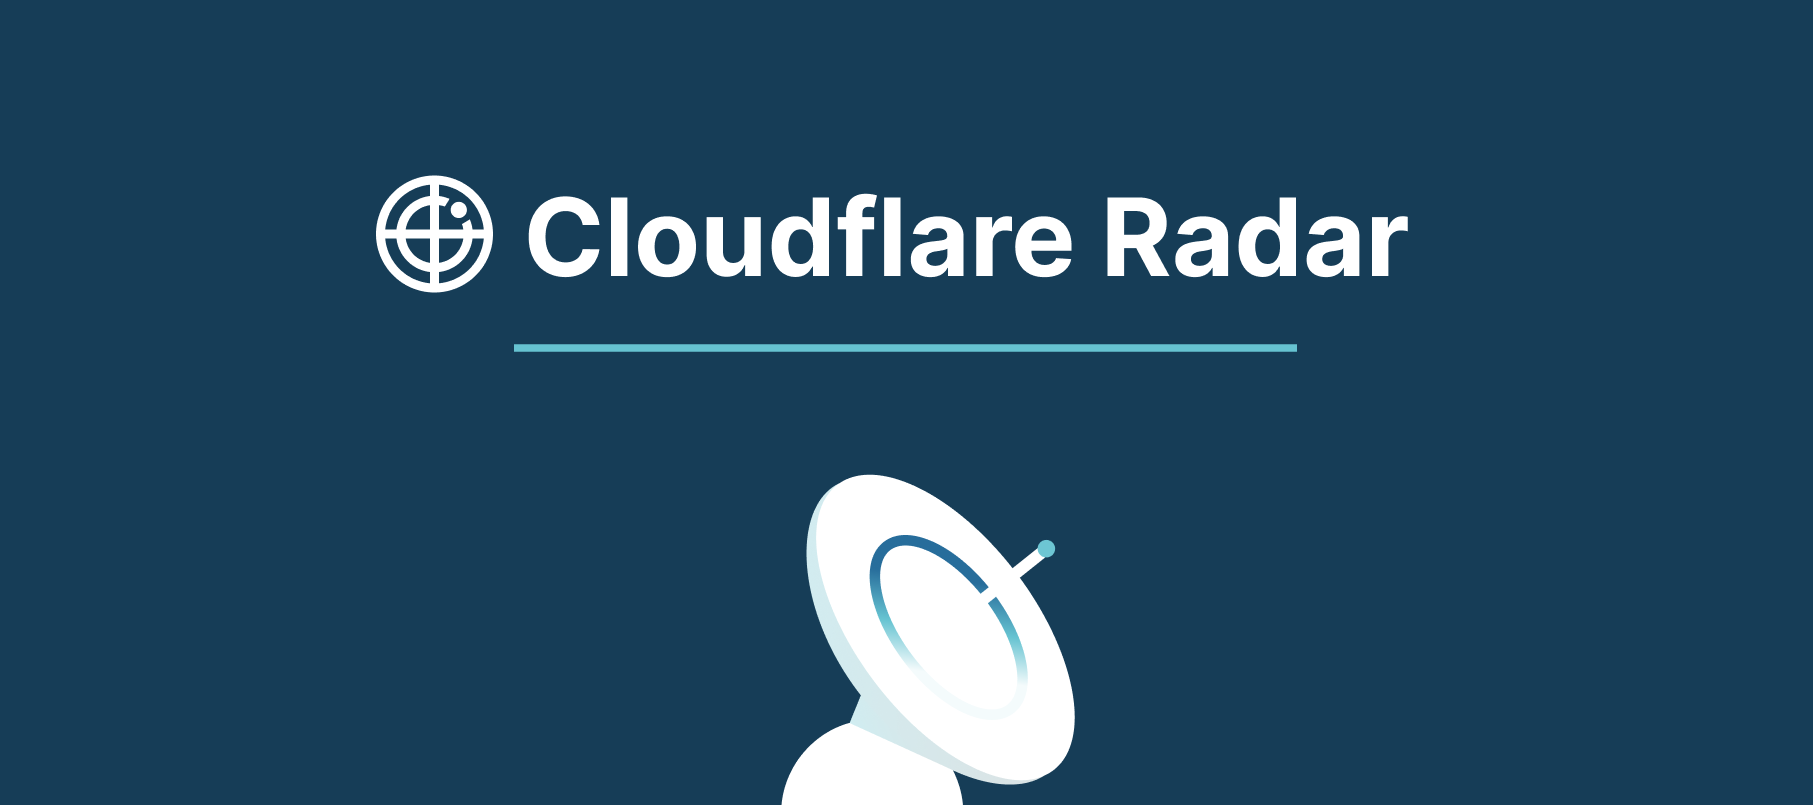 Introducing Cloudflare Radar